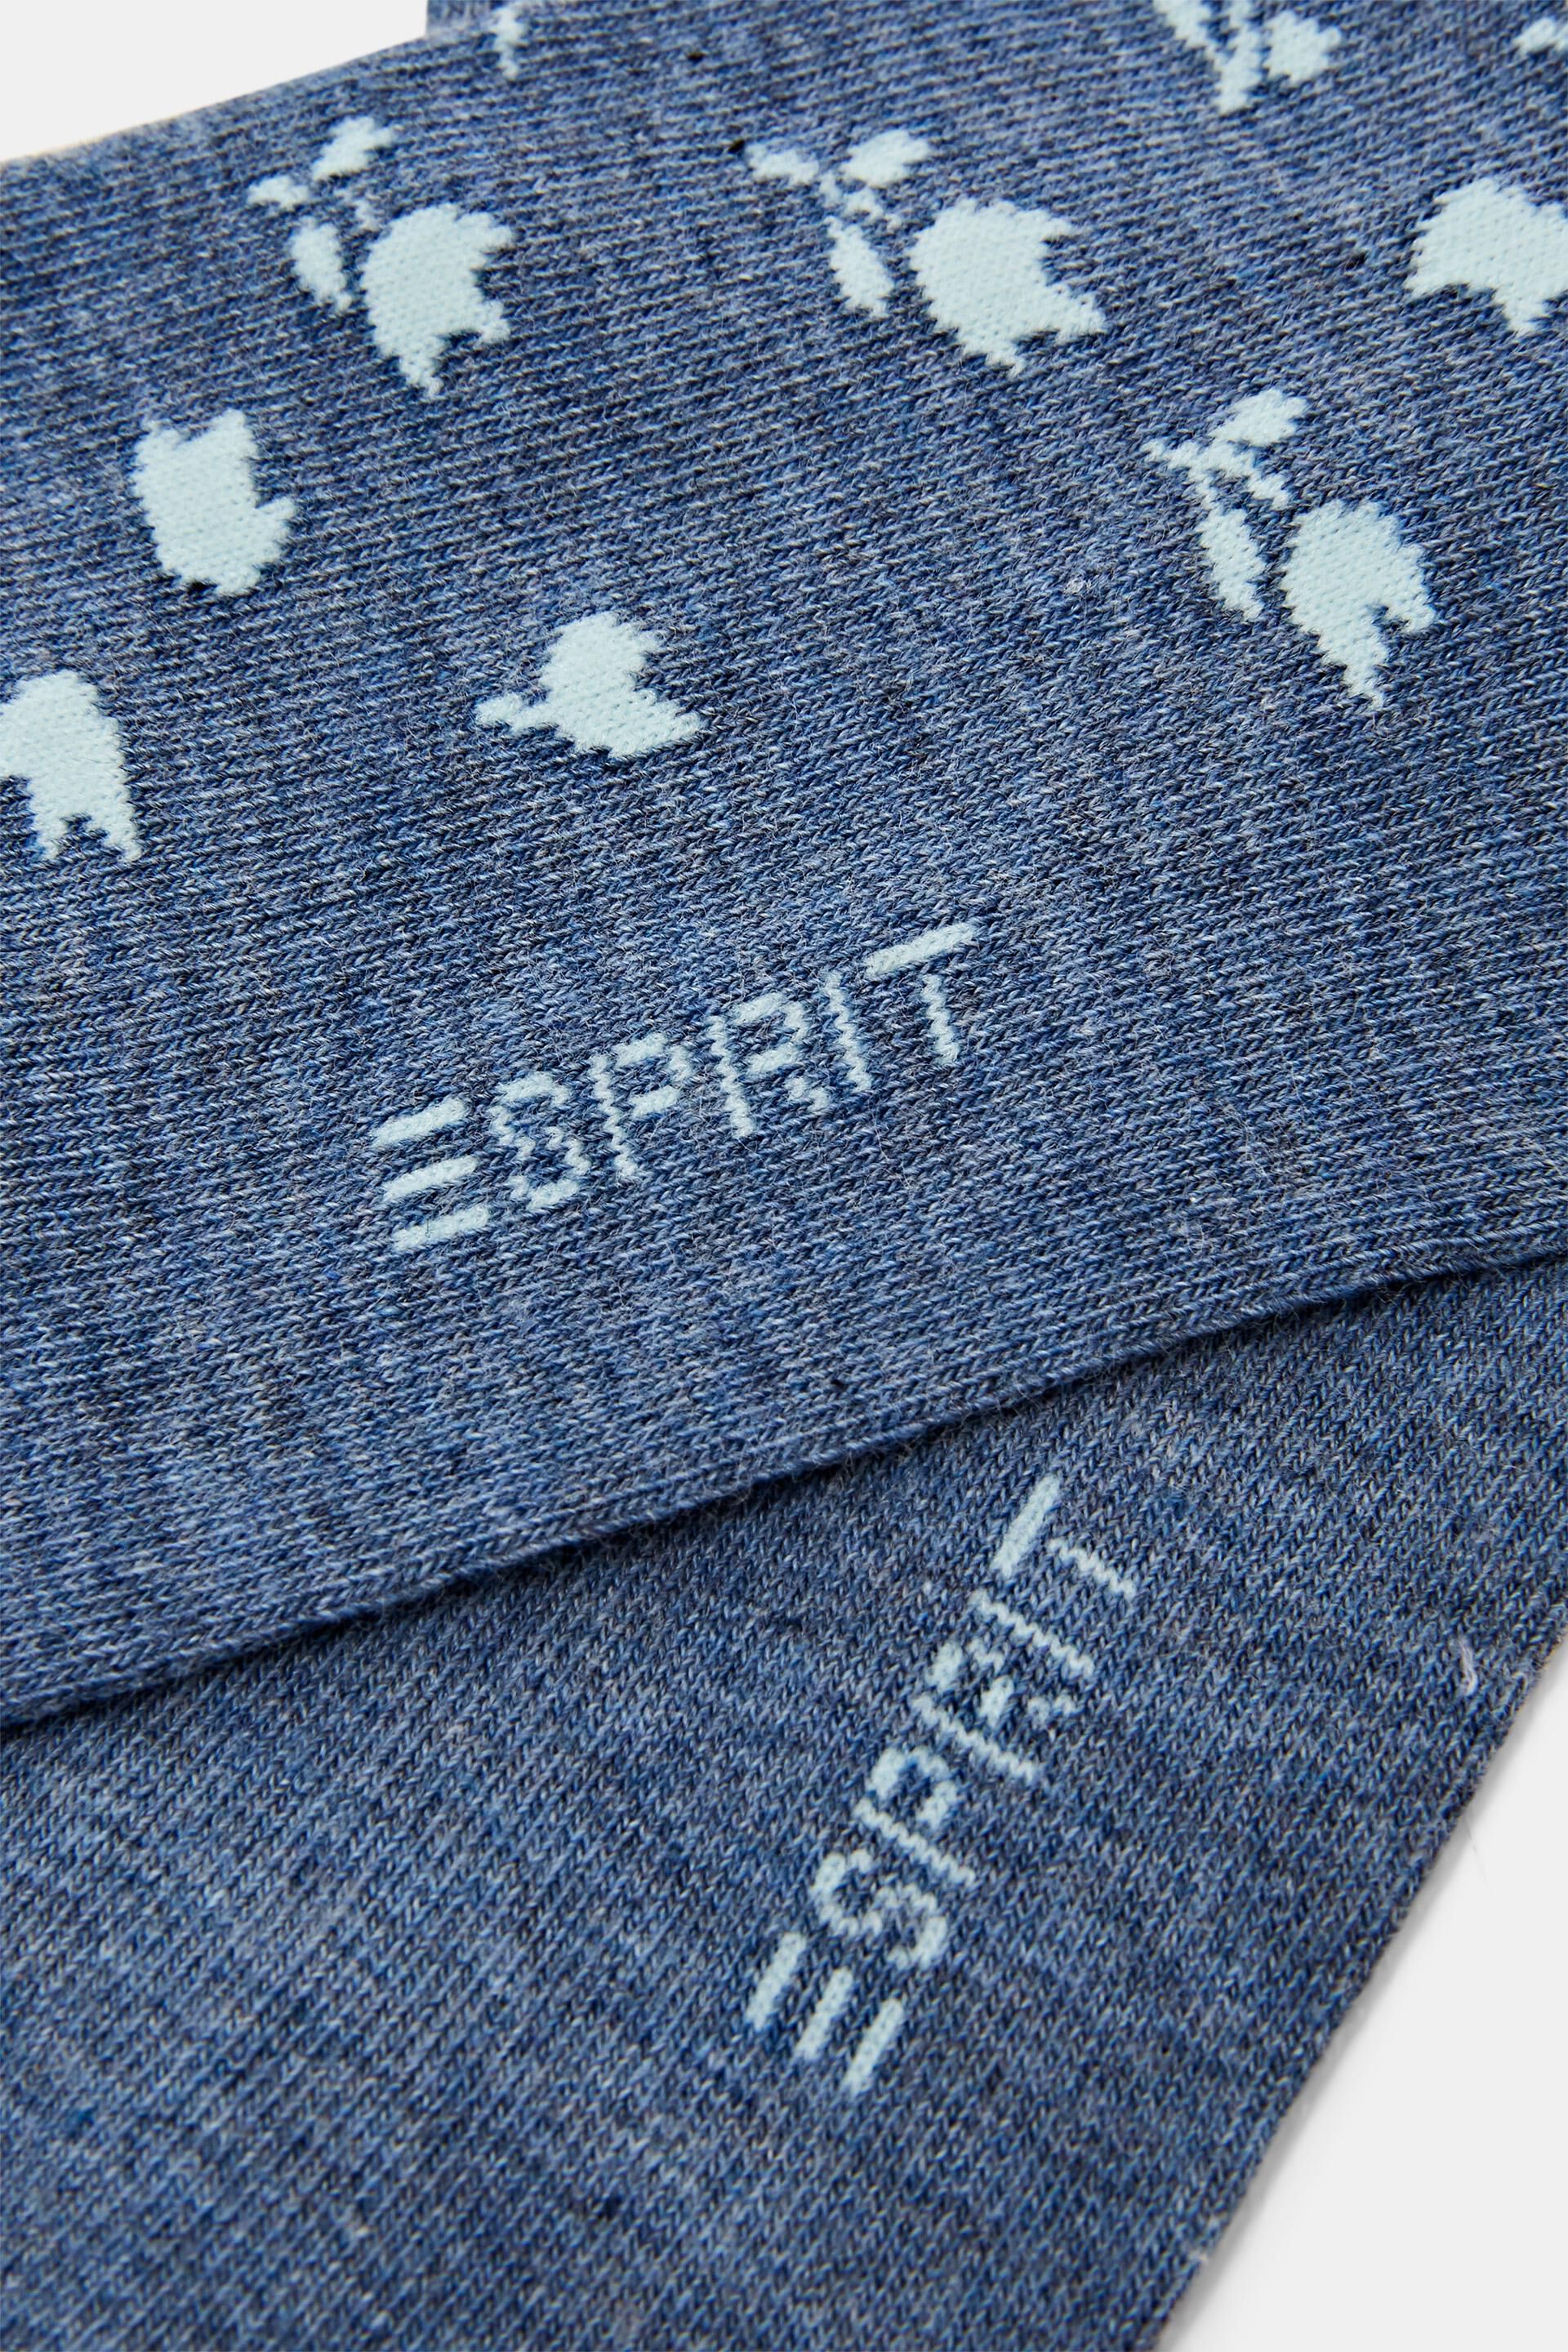 Esprit Online Store 2er-Pack kurze Socken mit Blumenmuster